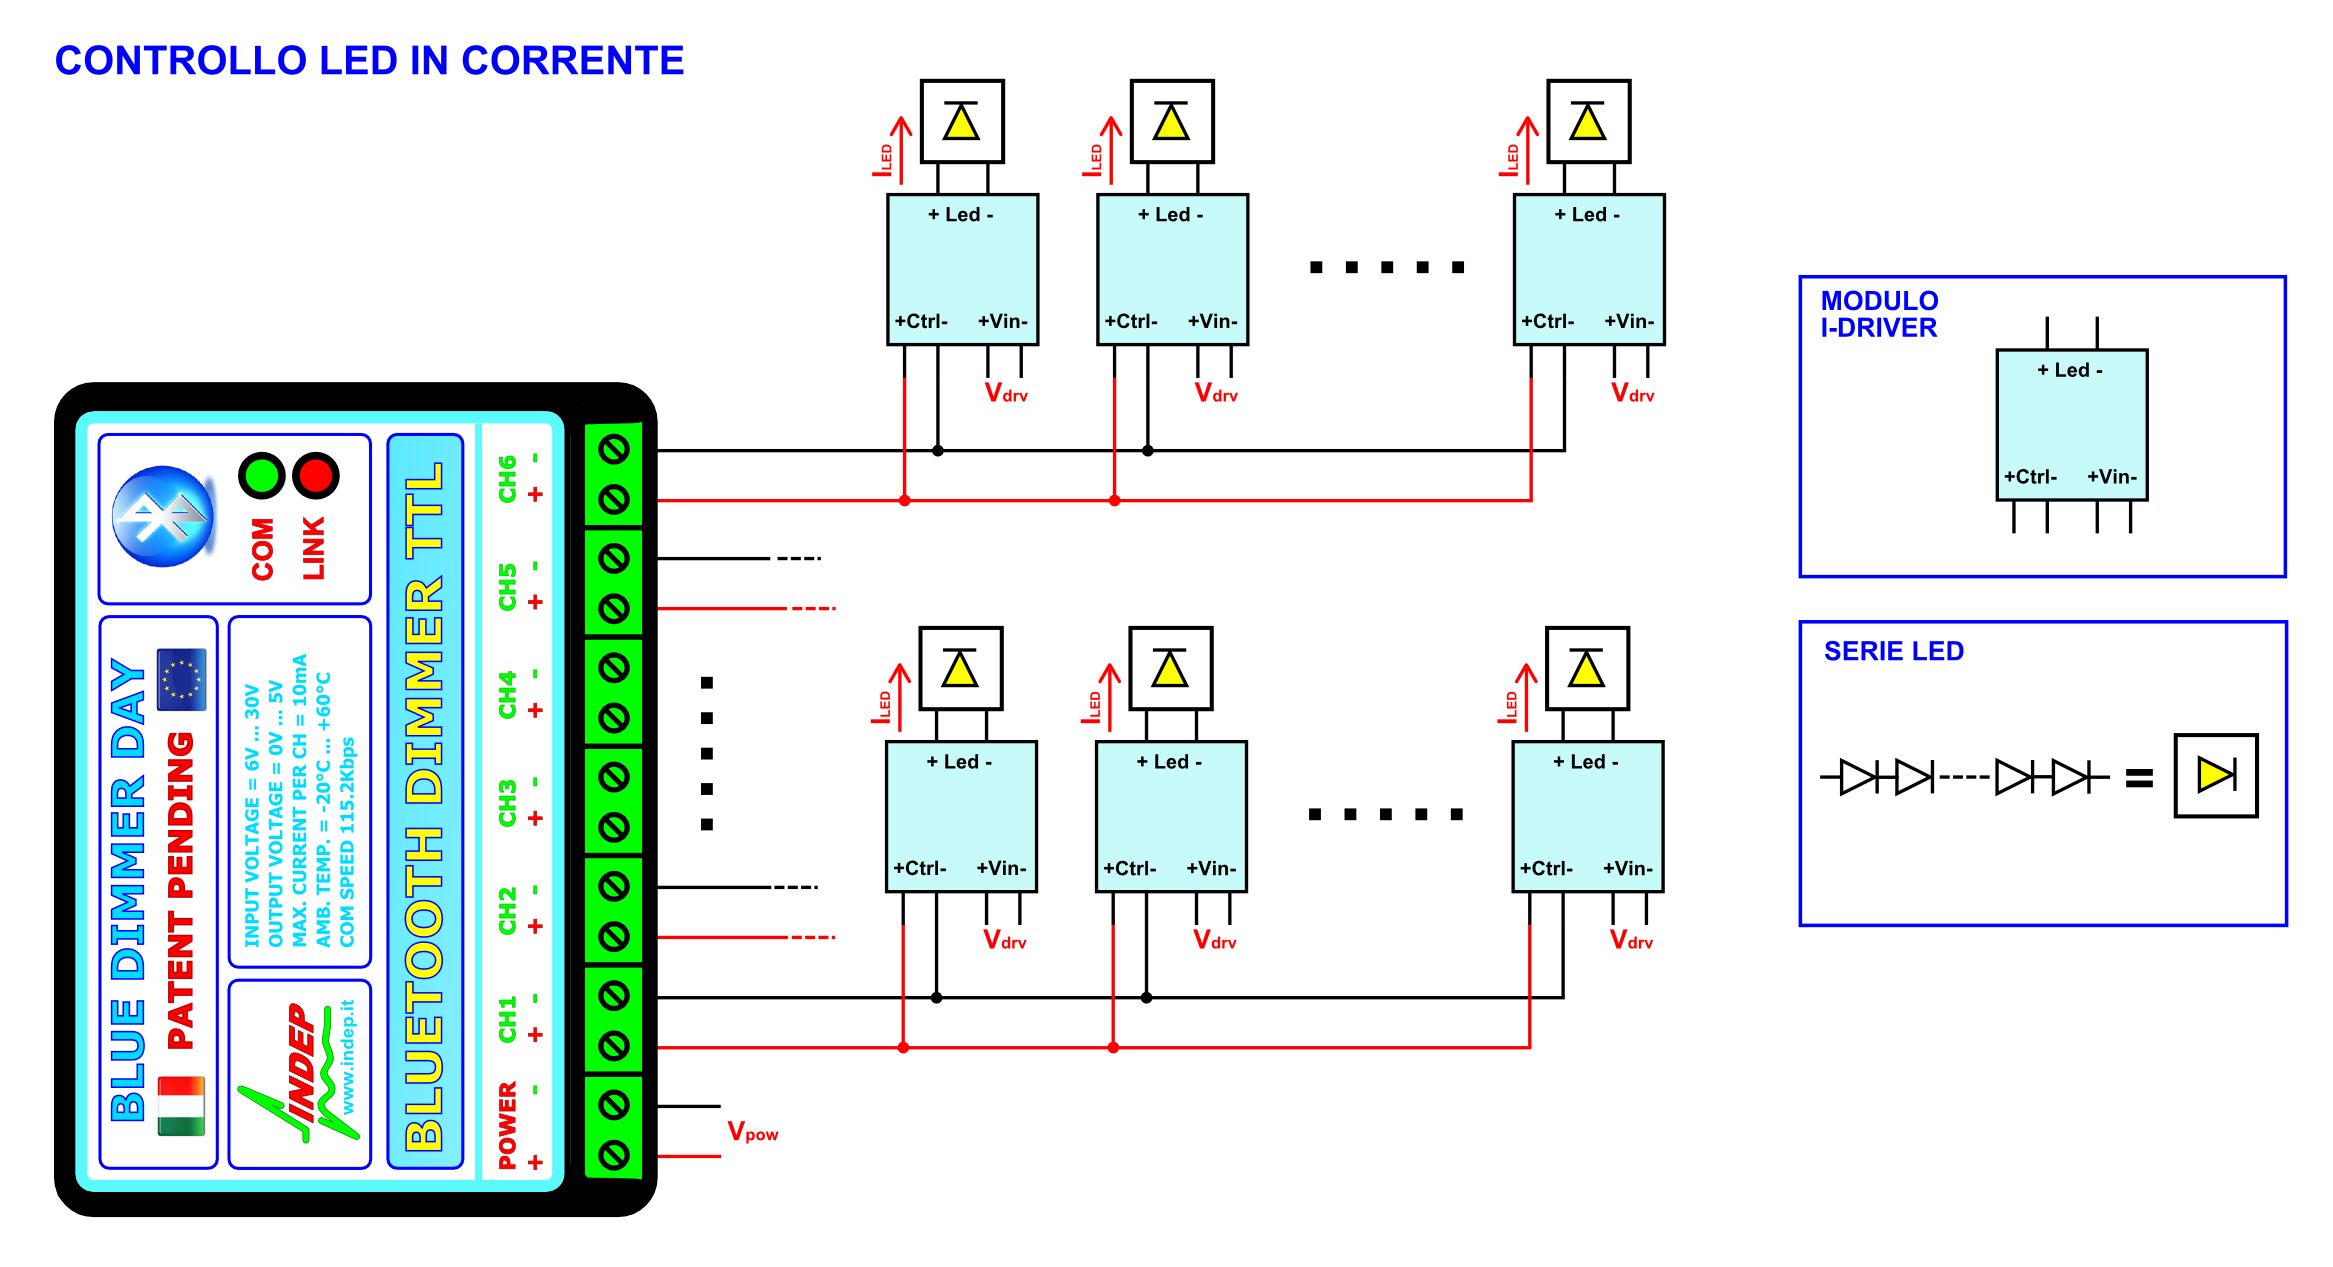 CASO 1: CONTROLLO IN CORRENTE. Nell esempio 1, viene presentato uno schema generale in cui la centralina BLUE DIMMER DAY TTL viene utilizzata con dei moduli I-DRIVER LC.